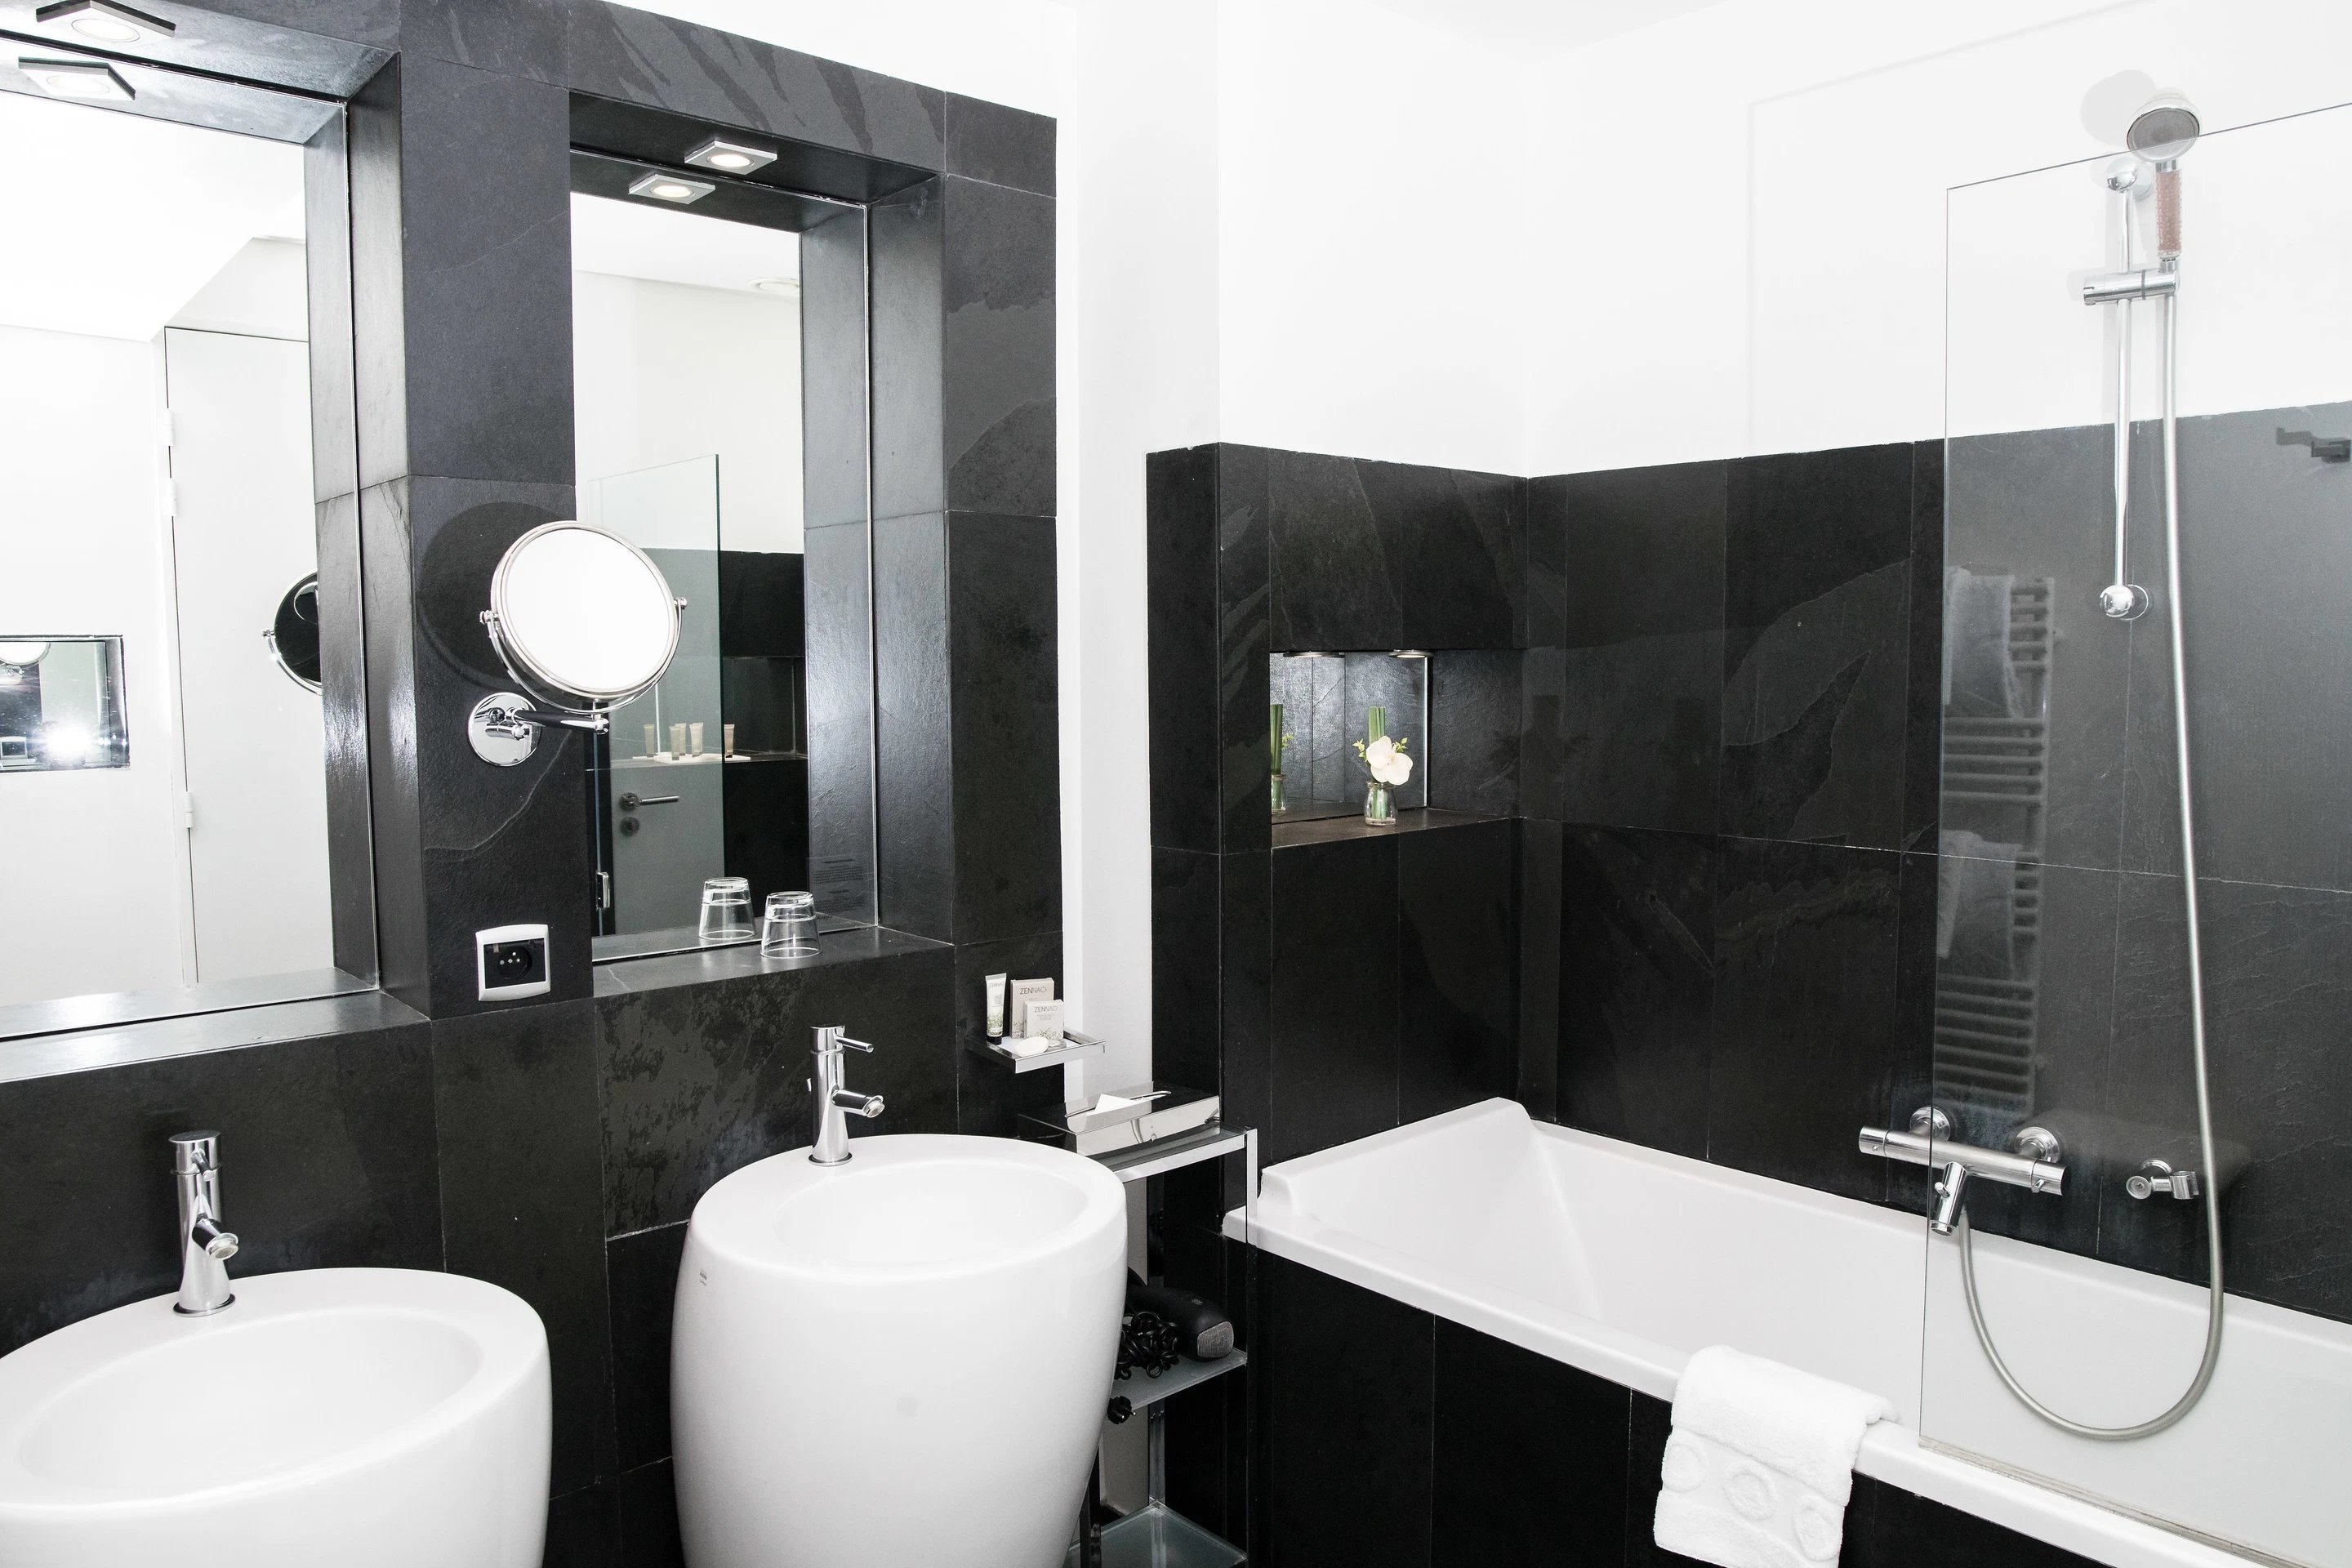 1K Paris - Chambre XL Duplex - Salle de bain